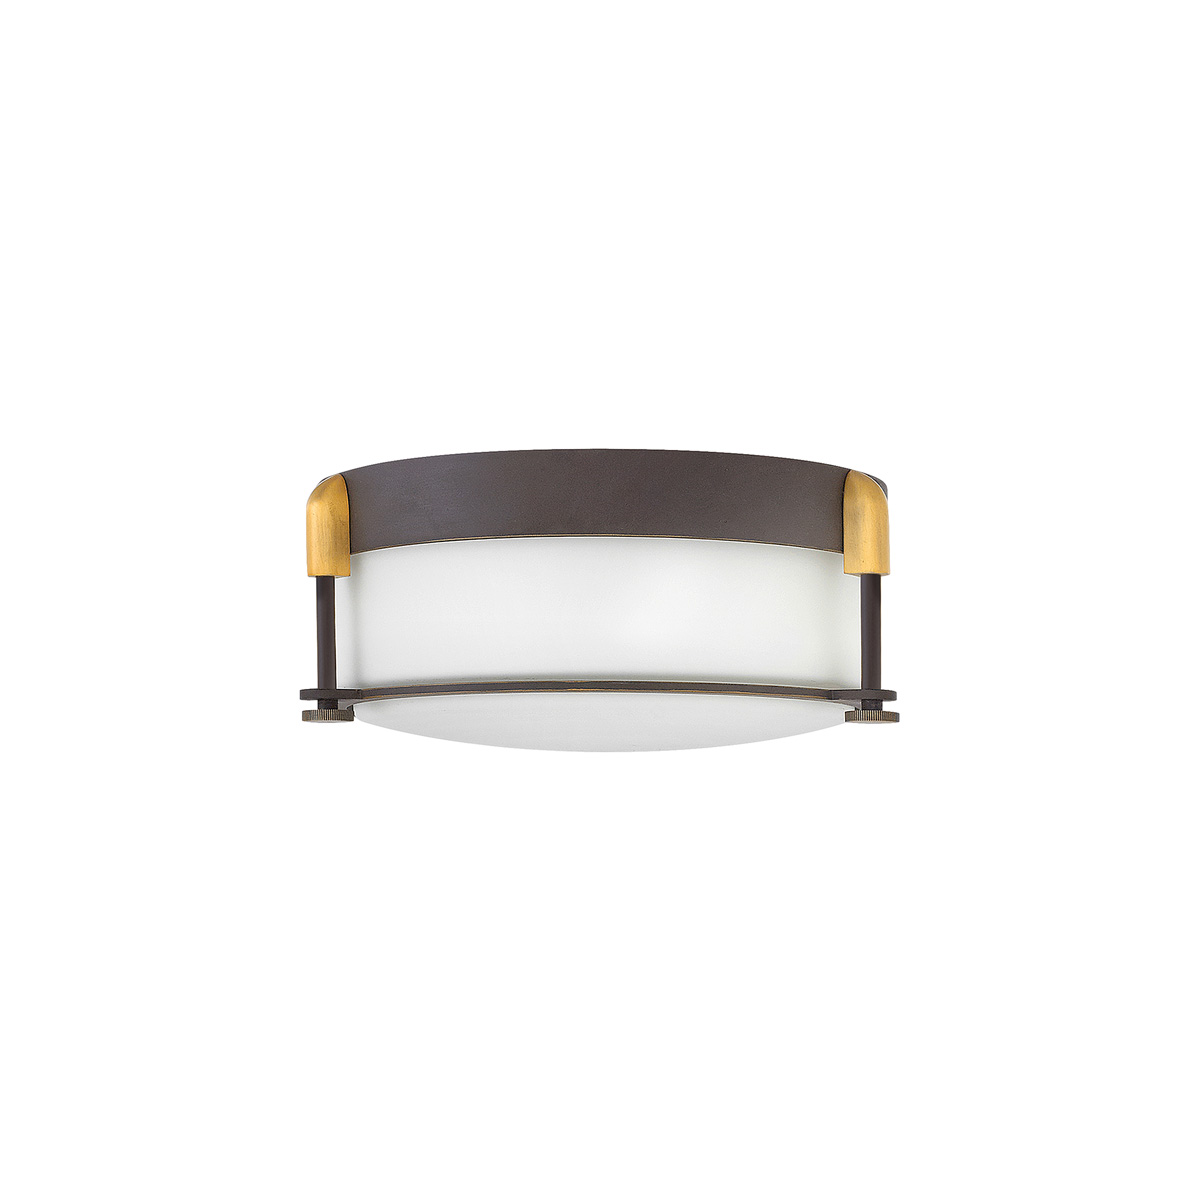 Потолочный светильник для ванных комнат HK-COLBIN-F-S-OZ, Потолочные светильники для ванных комнат | Бронза Матовое стекло.